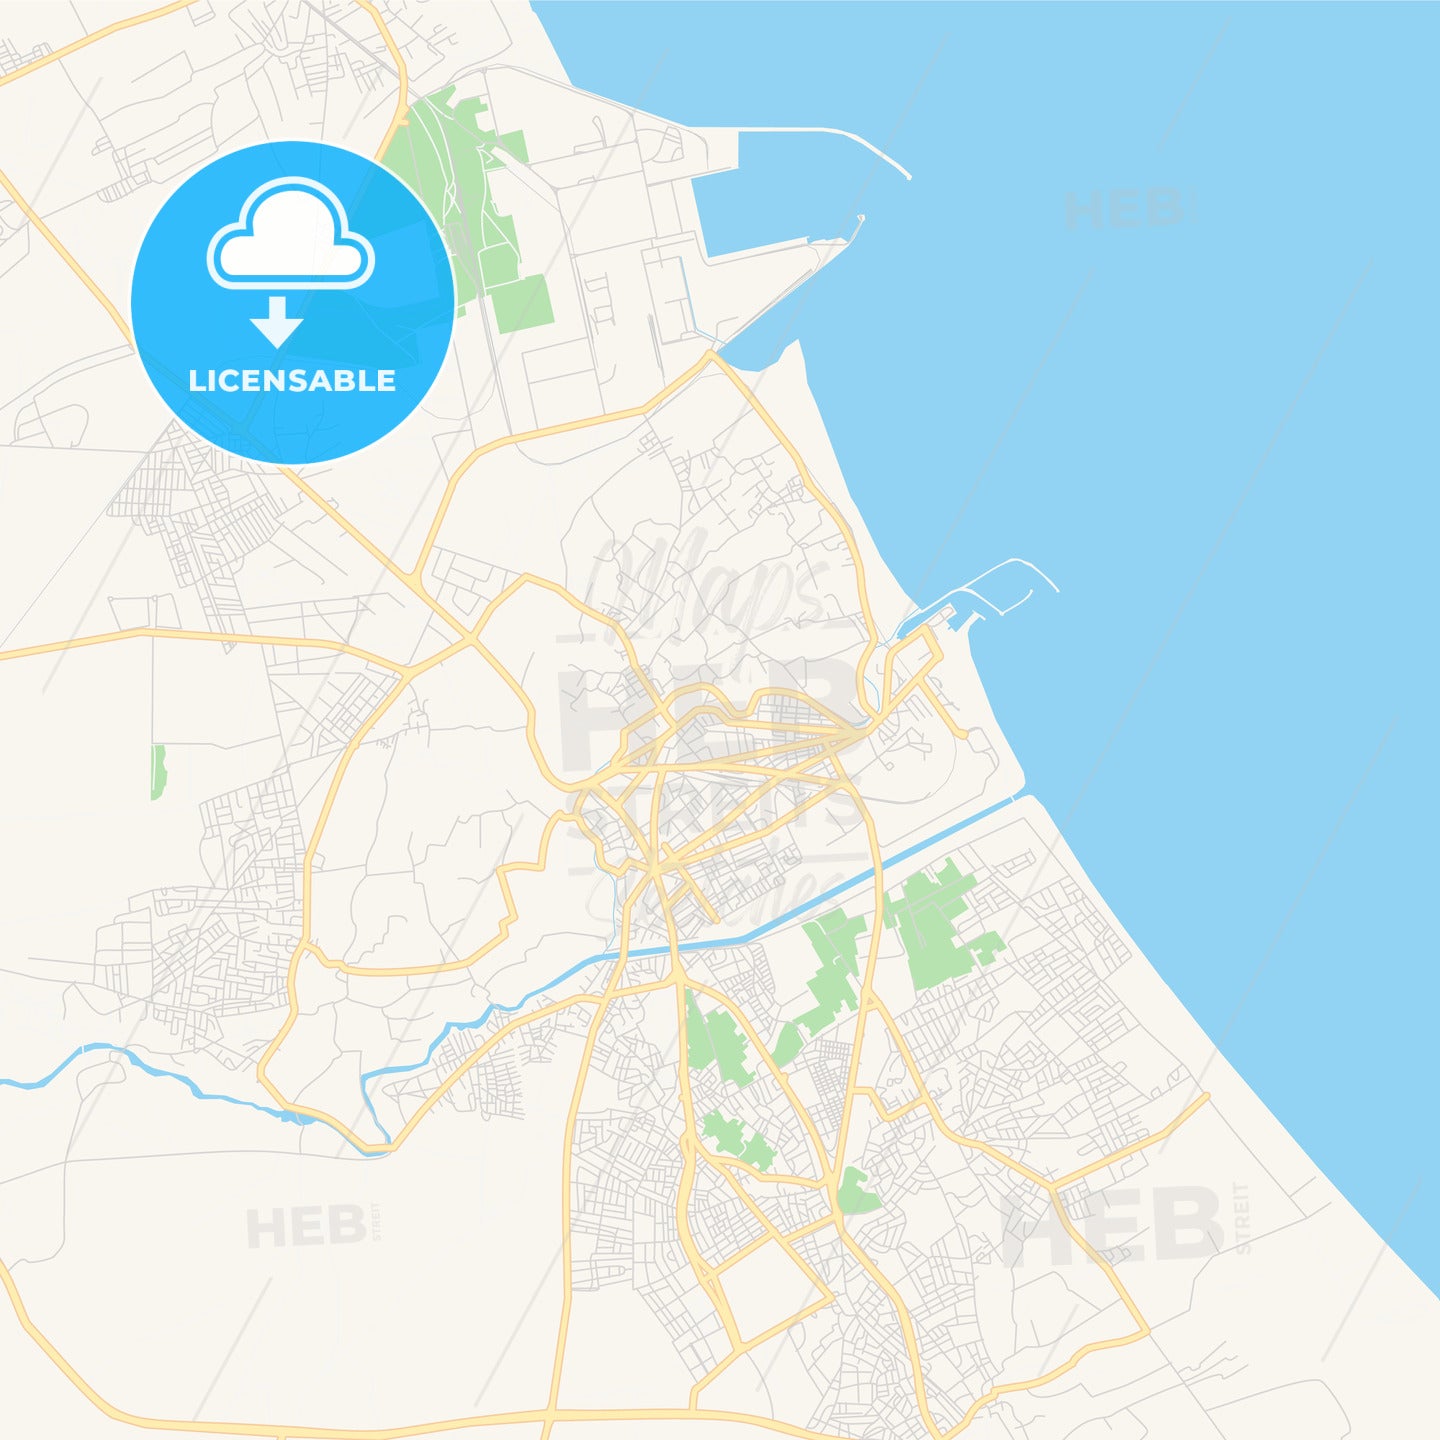 Printable street map of Gabes, Tunisia